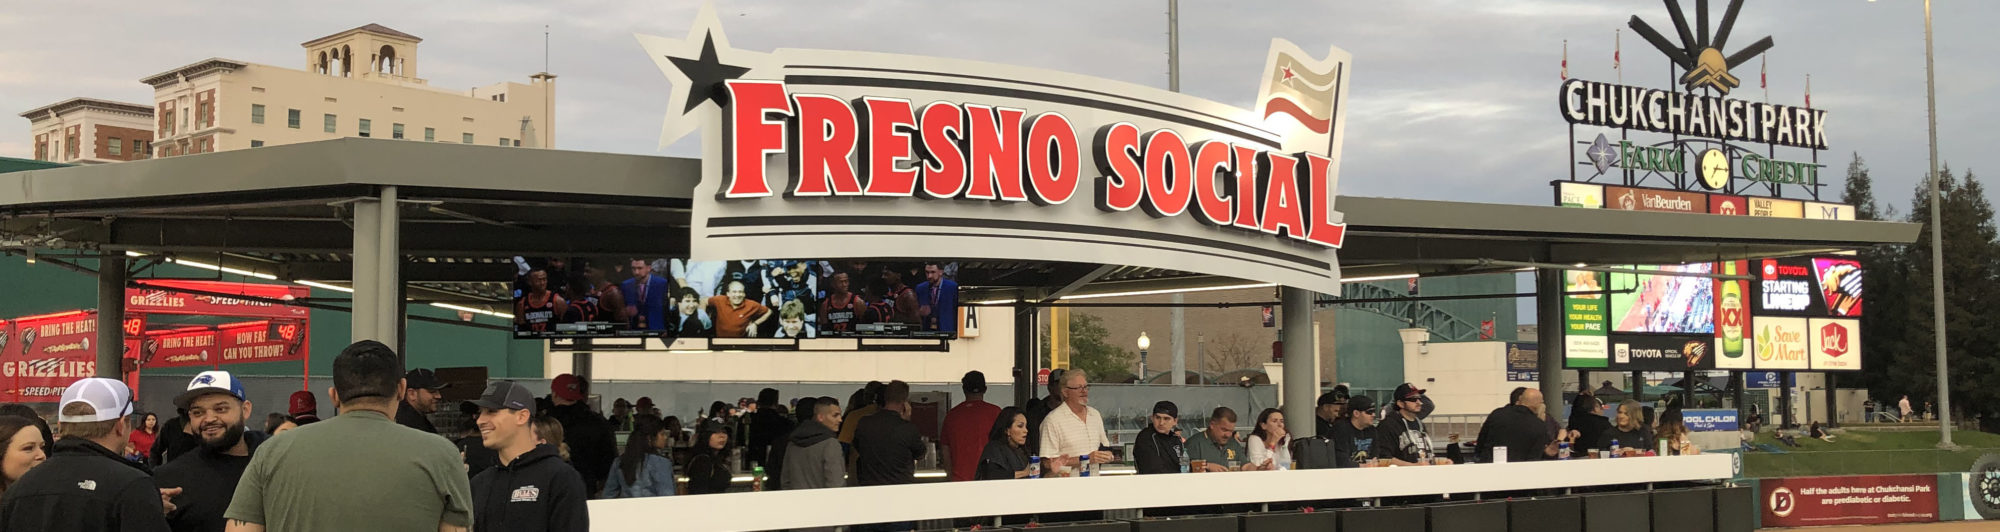 Fresno Grizzlies Start Season with Fresh Upgrades